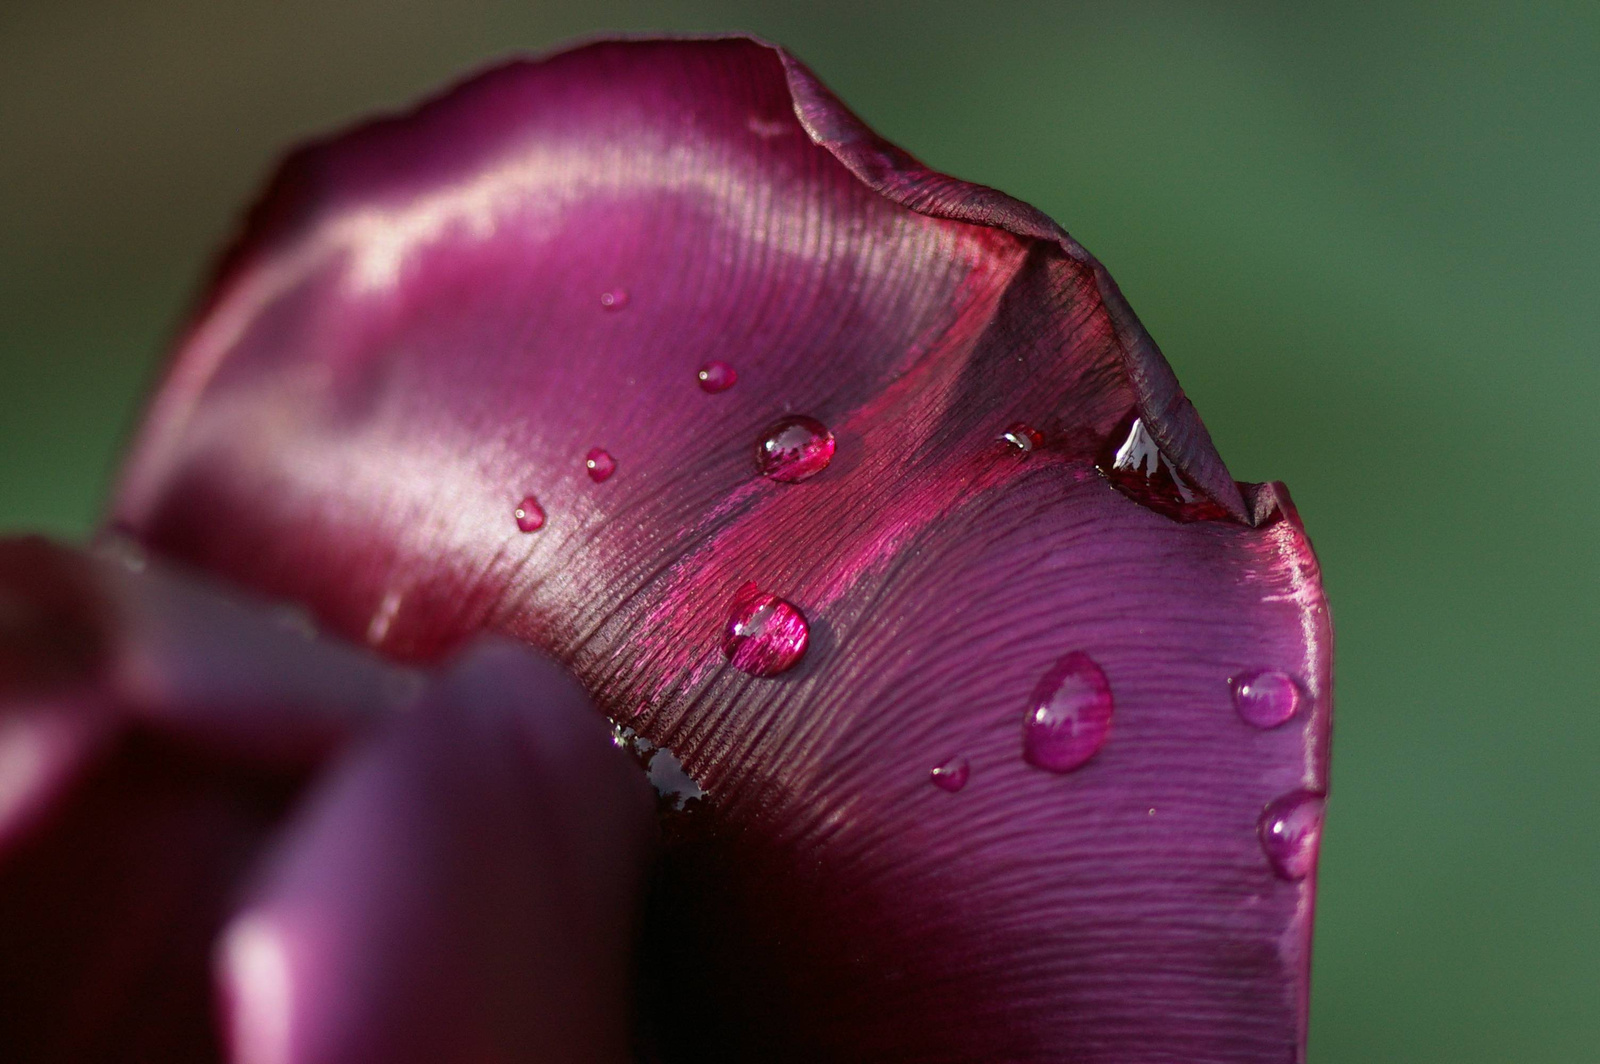 fekete tulipán eső után 1